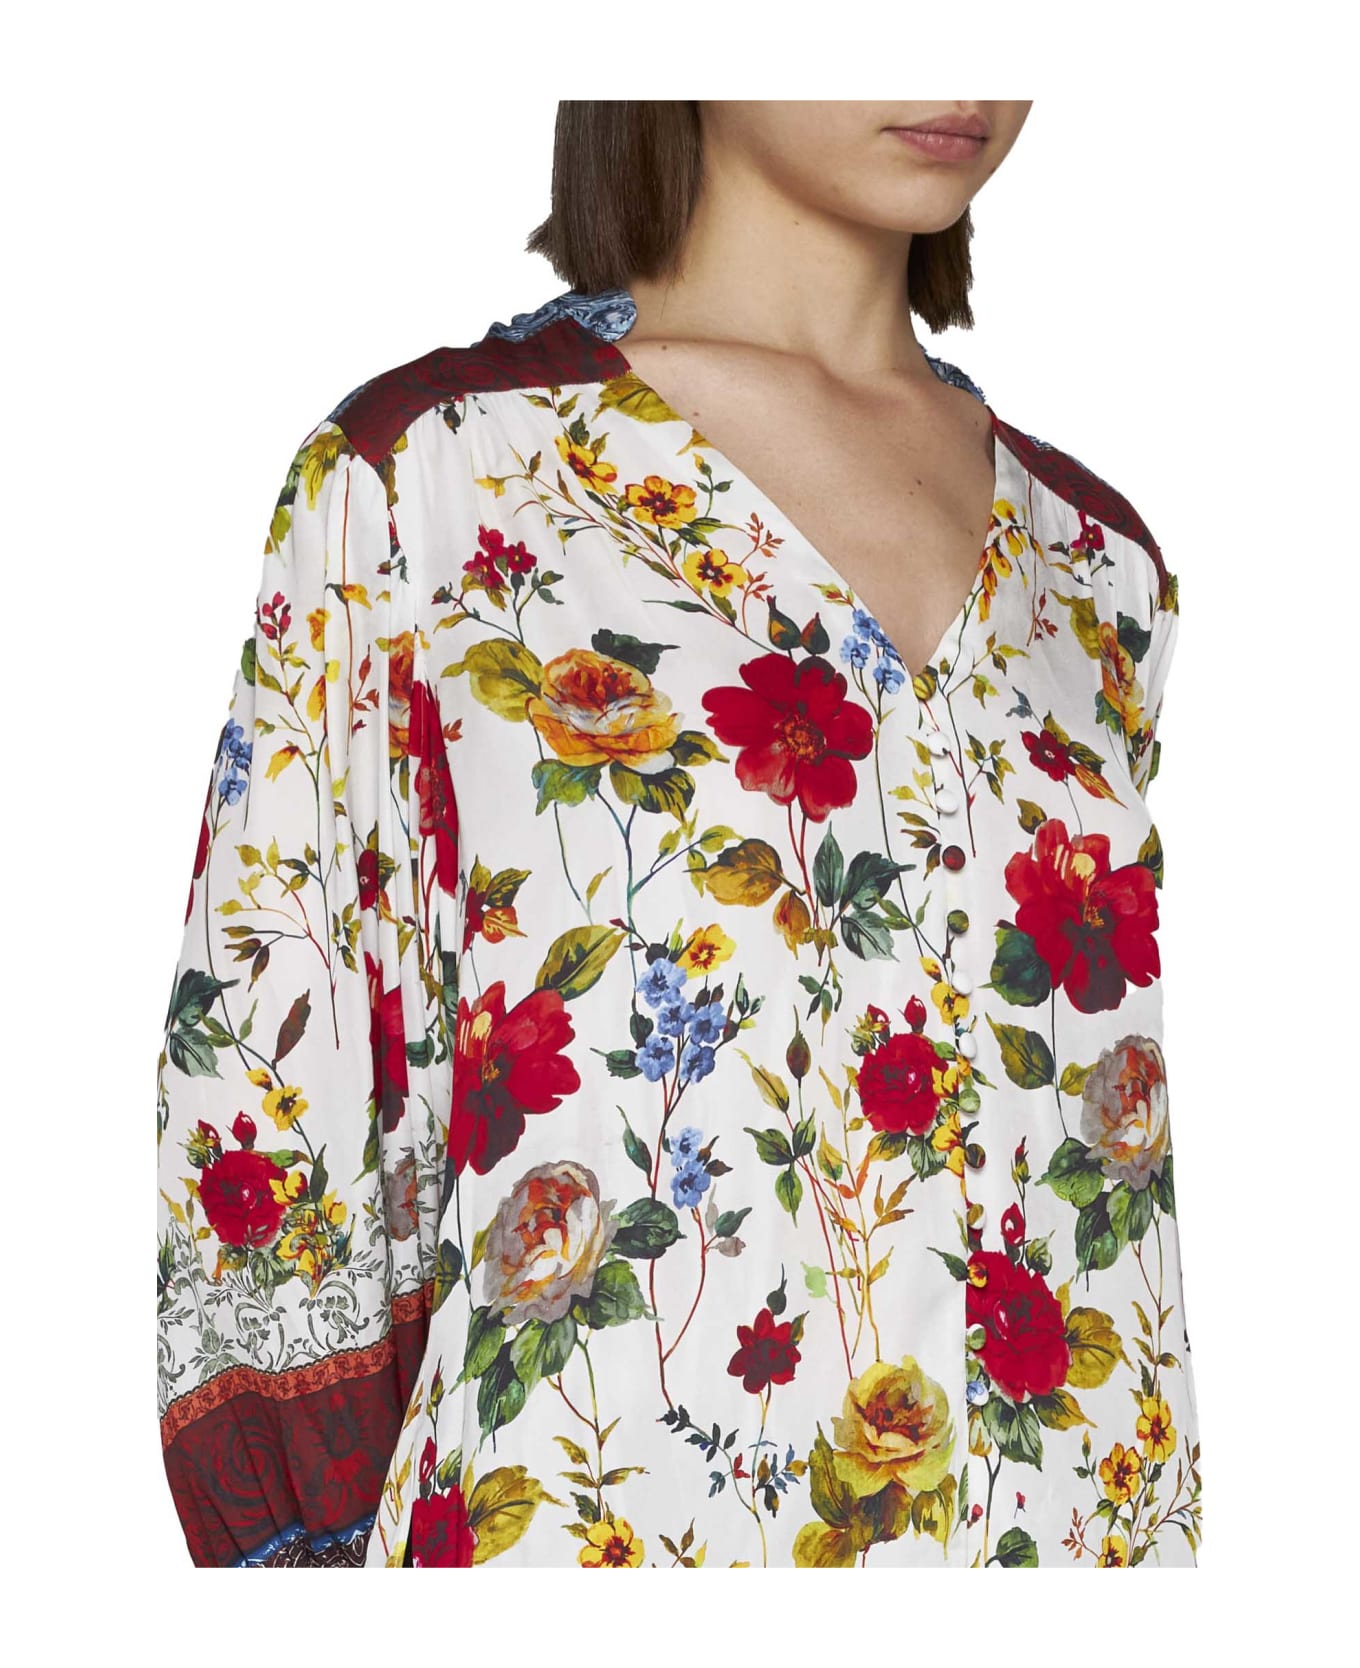 Alice + Olivia Shirt - Dew floral